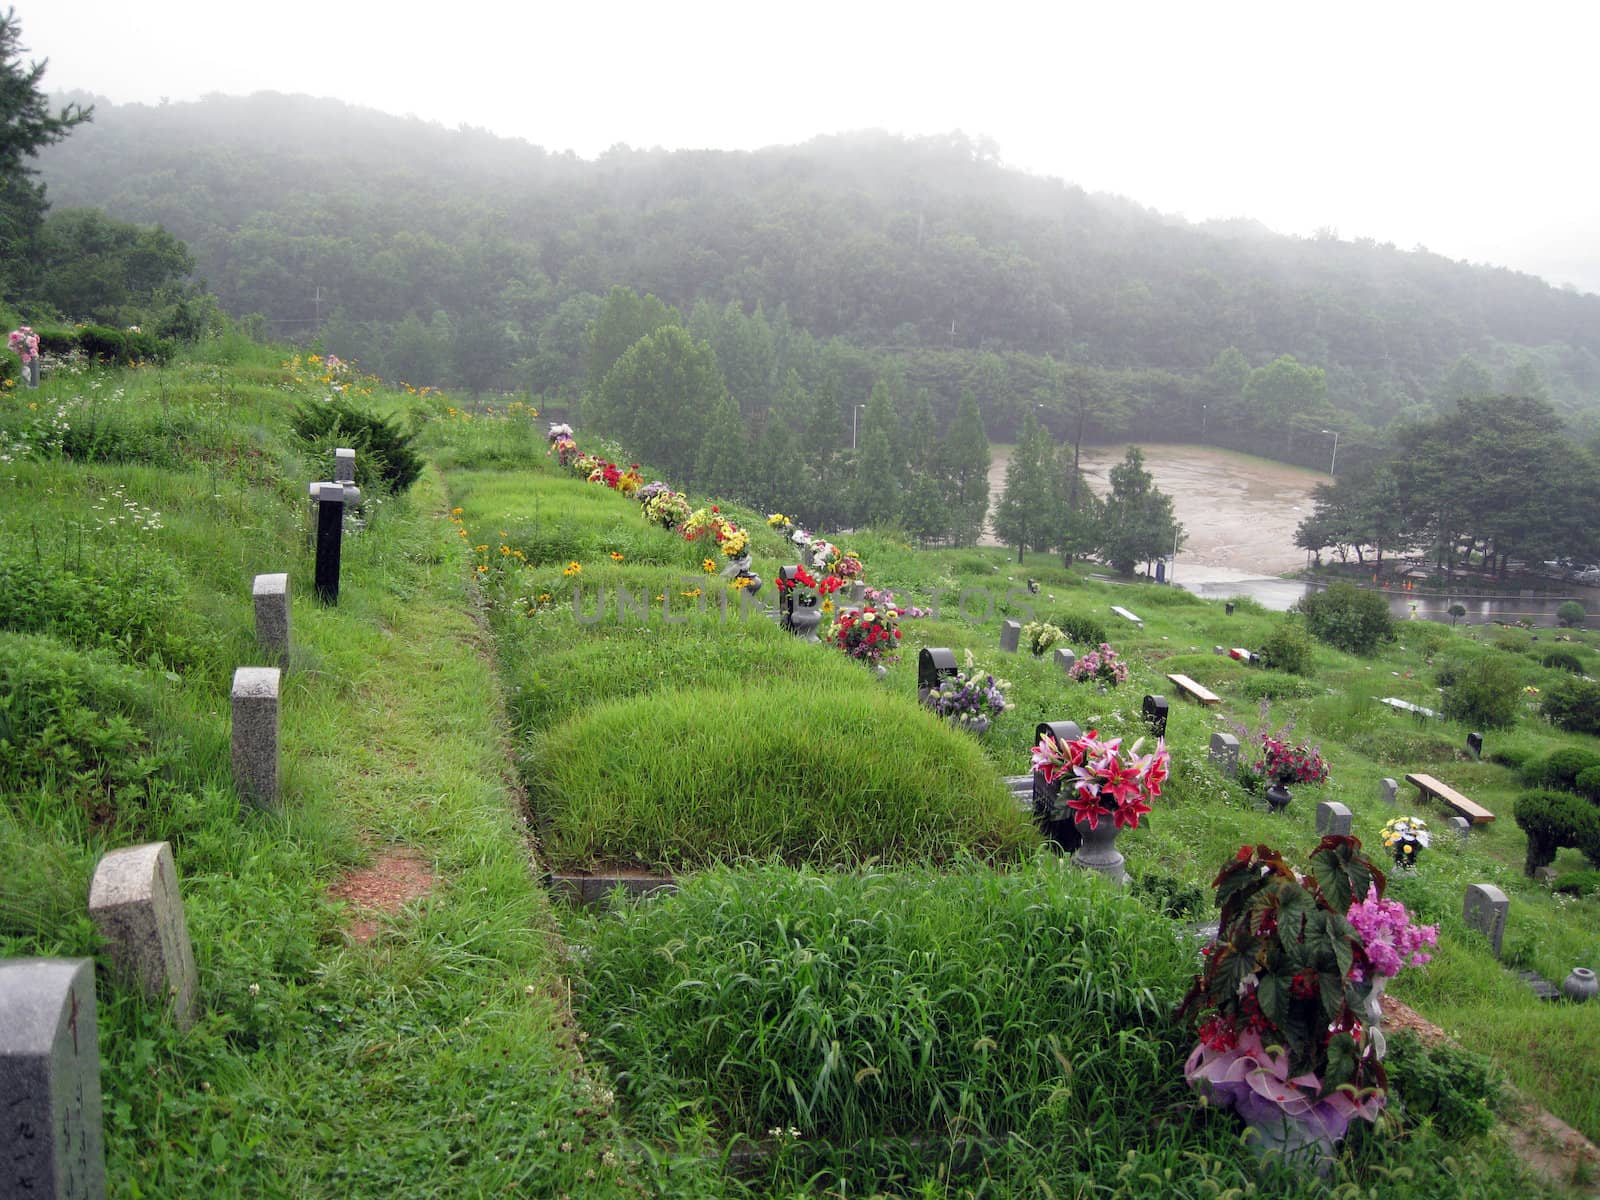 a Christian's graves in Korea